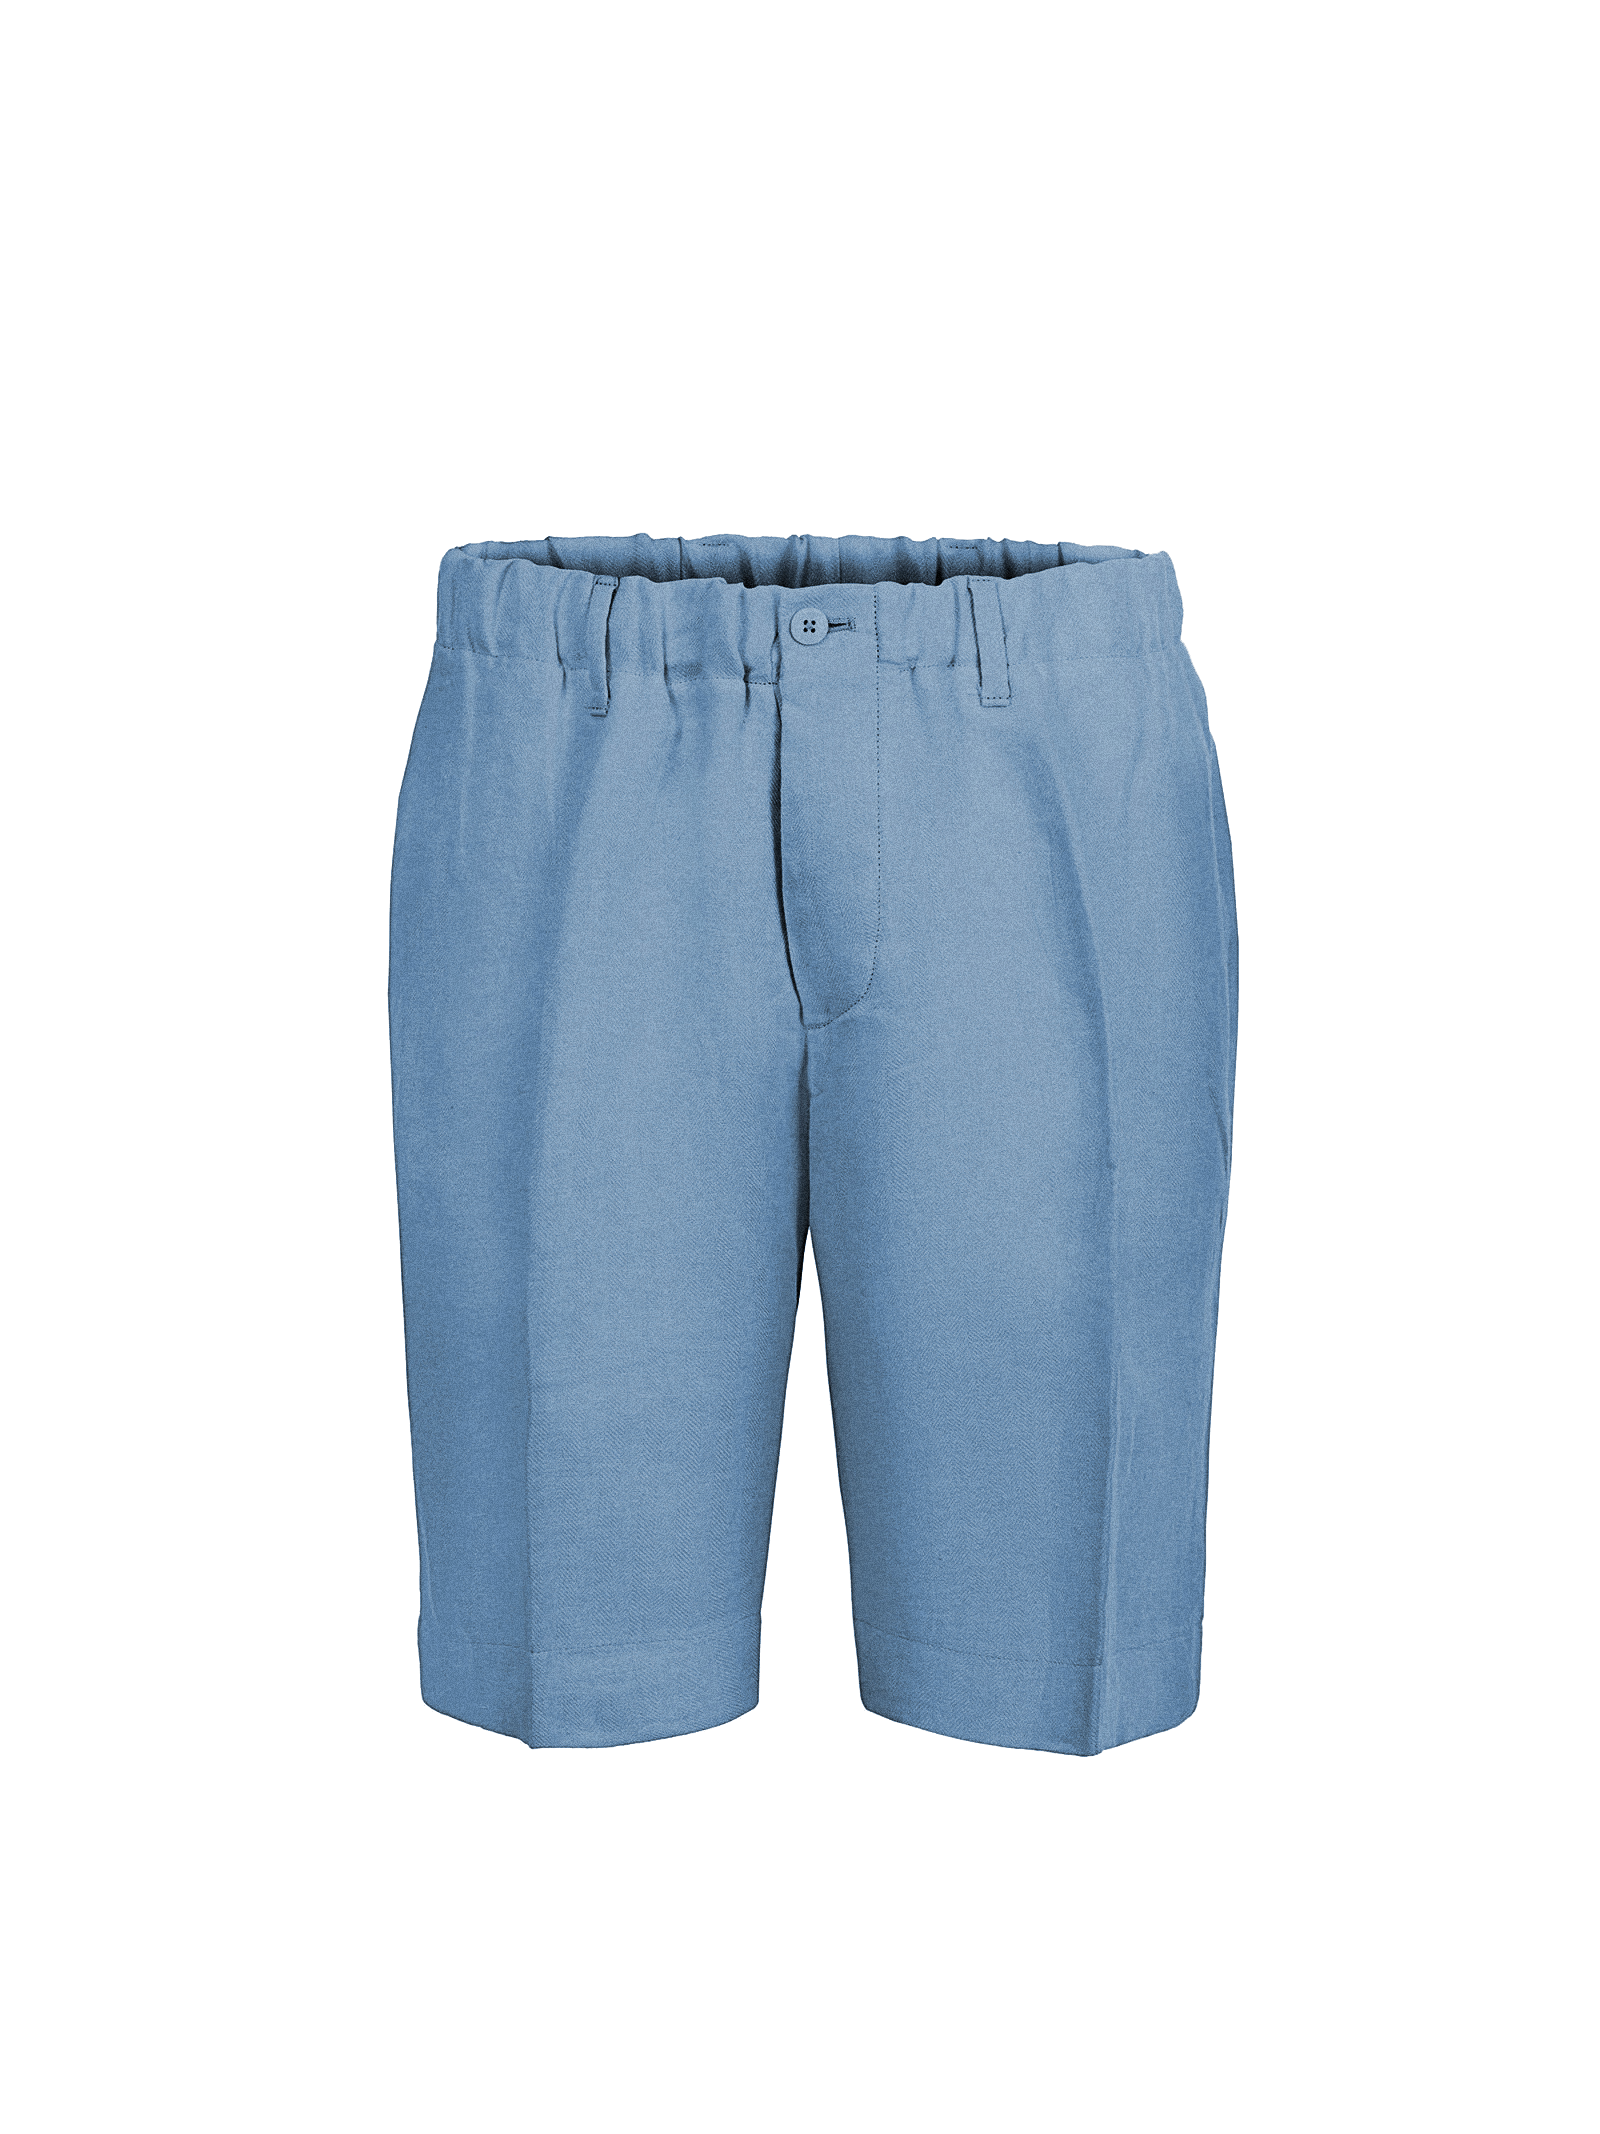 Bermuda Capri for men 100% Capri jeanslinen pant front